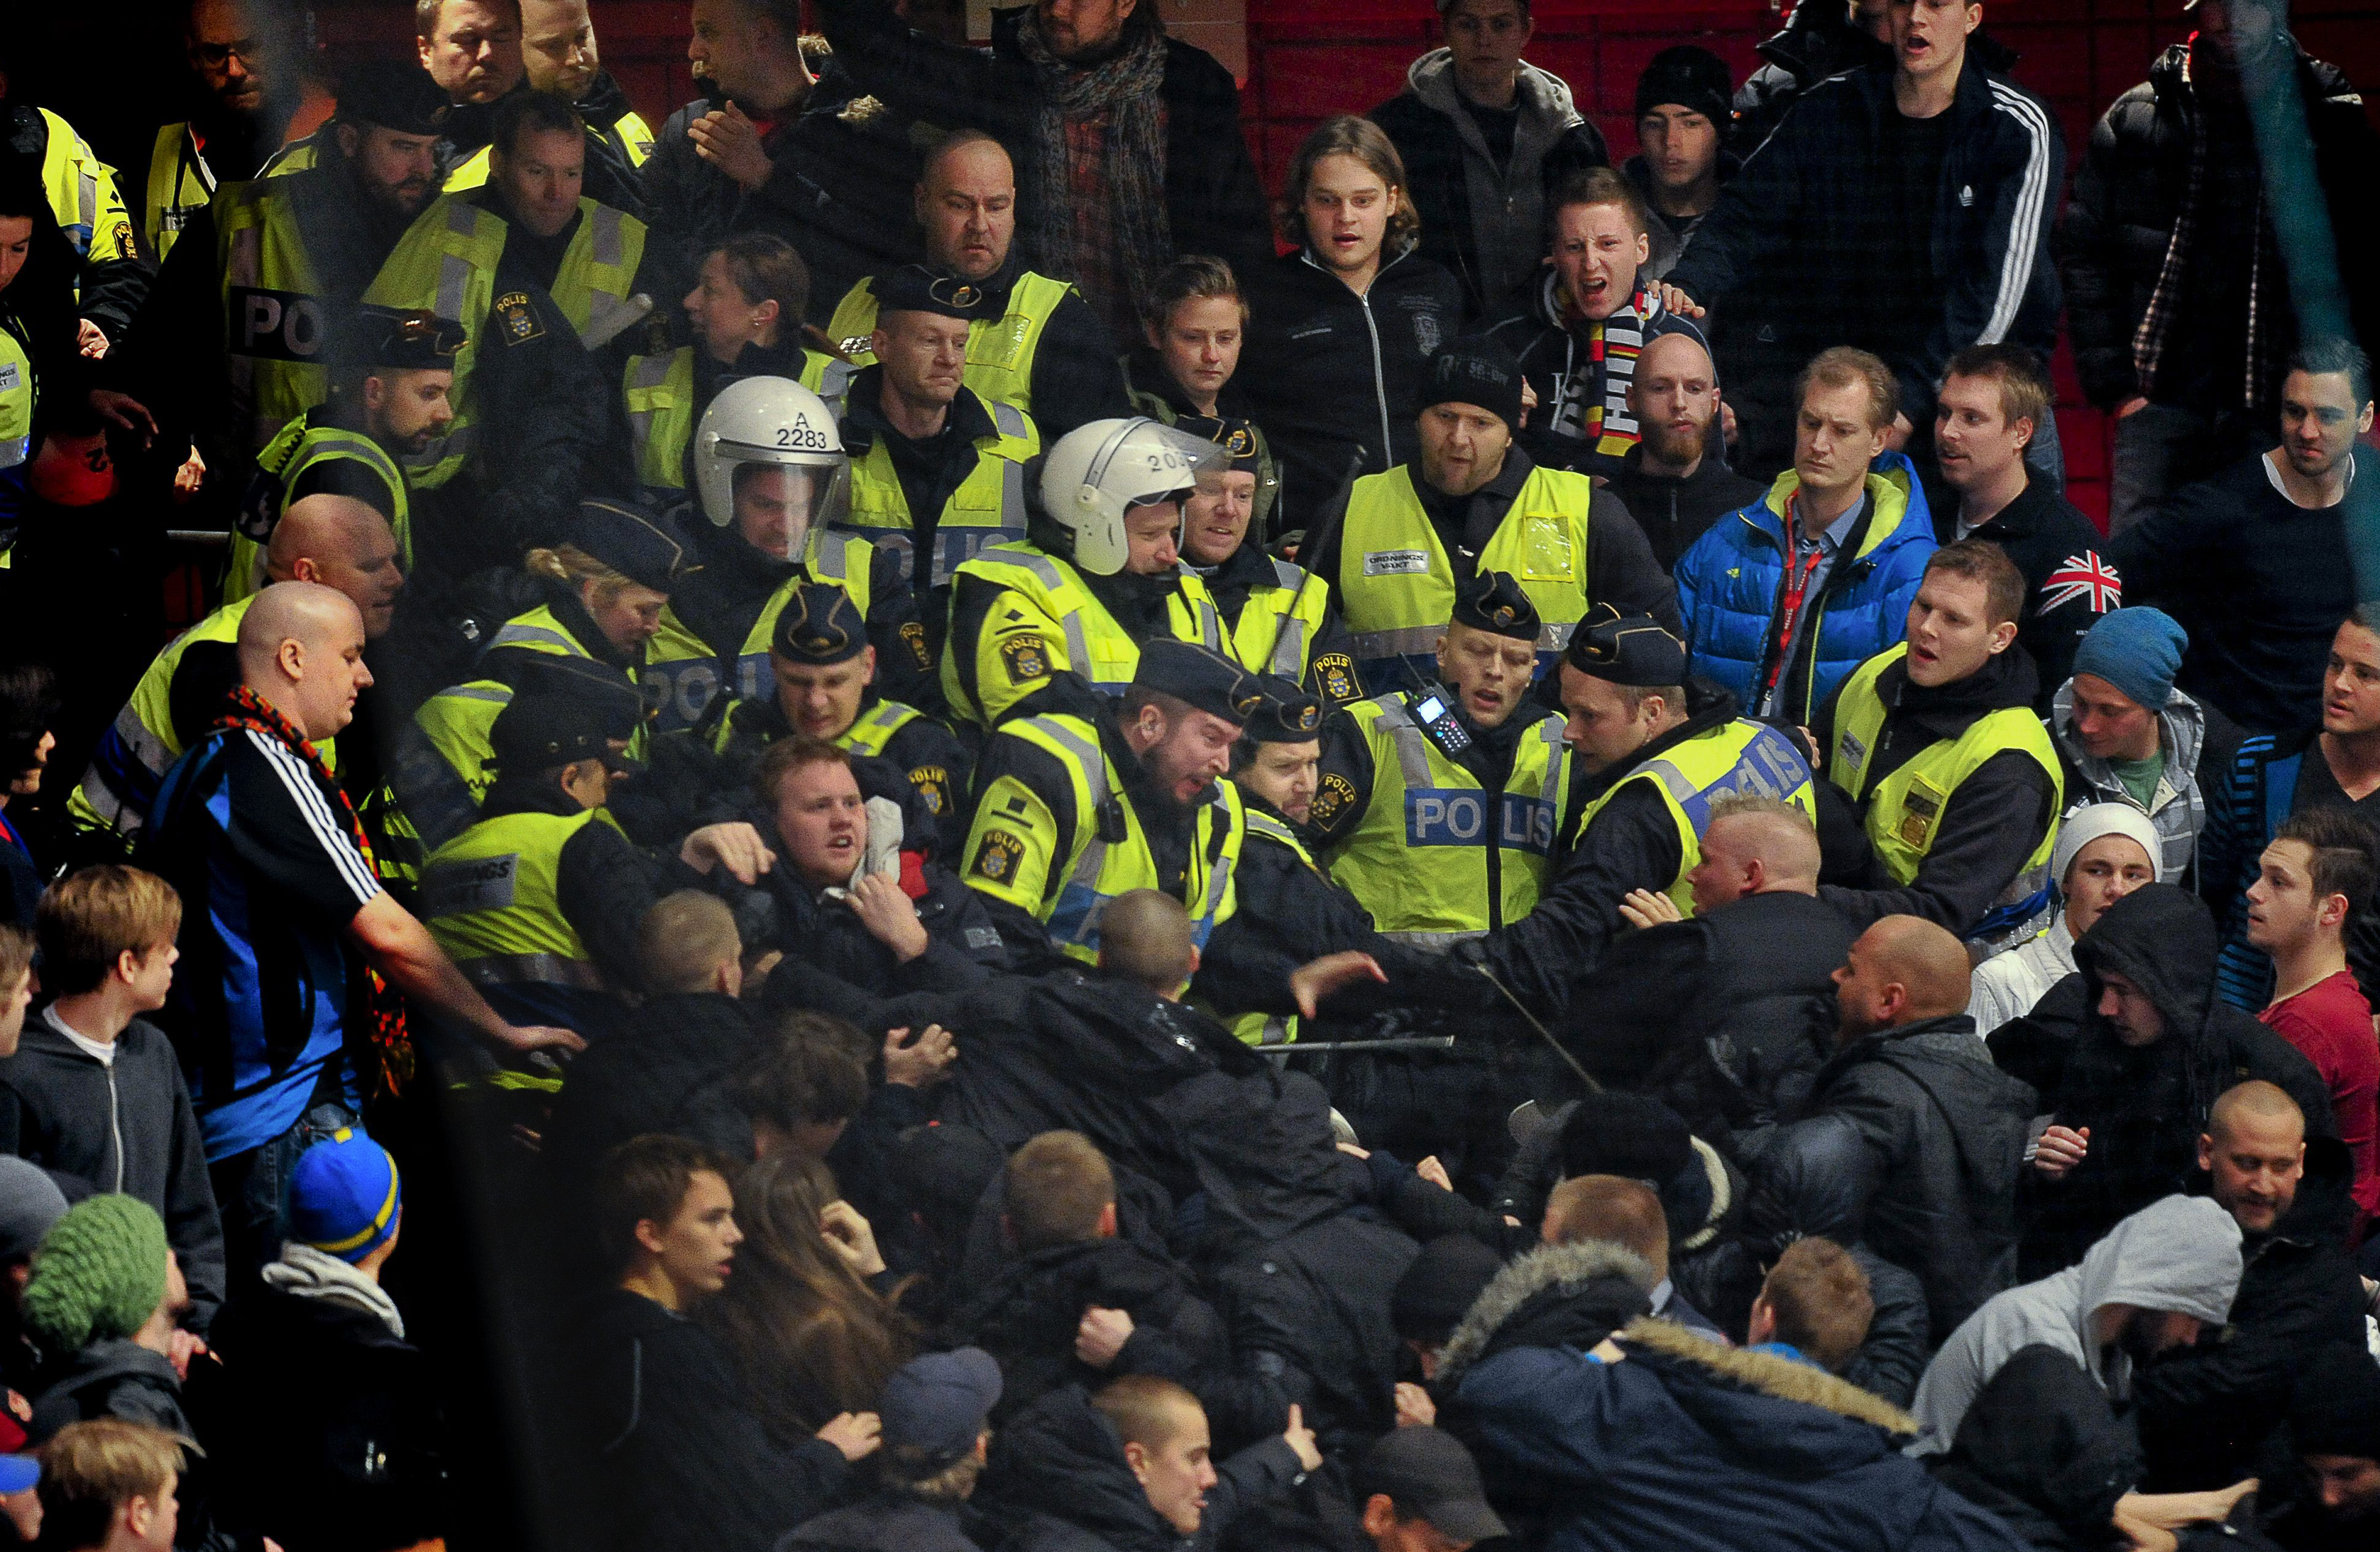 Derbypolisen väckte ilska när de gick in i de klubbarnas respektive klackar. Nu åtalas även en av poliserna för ofredande.